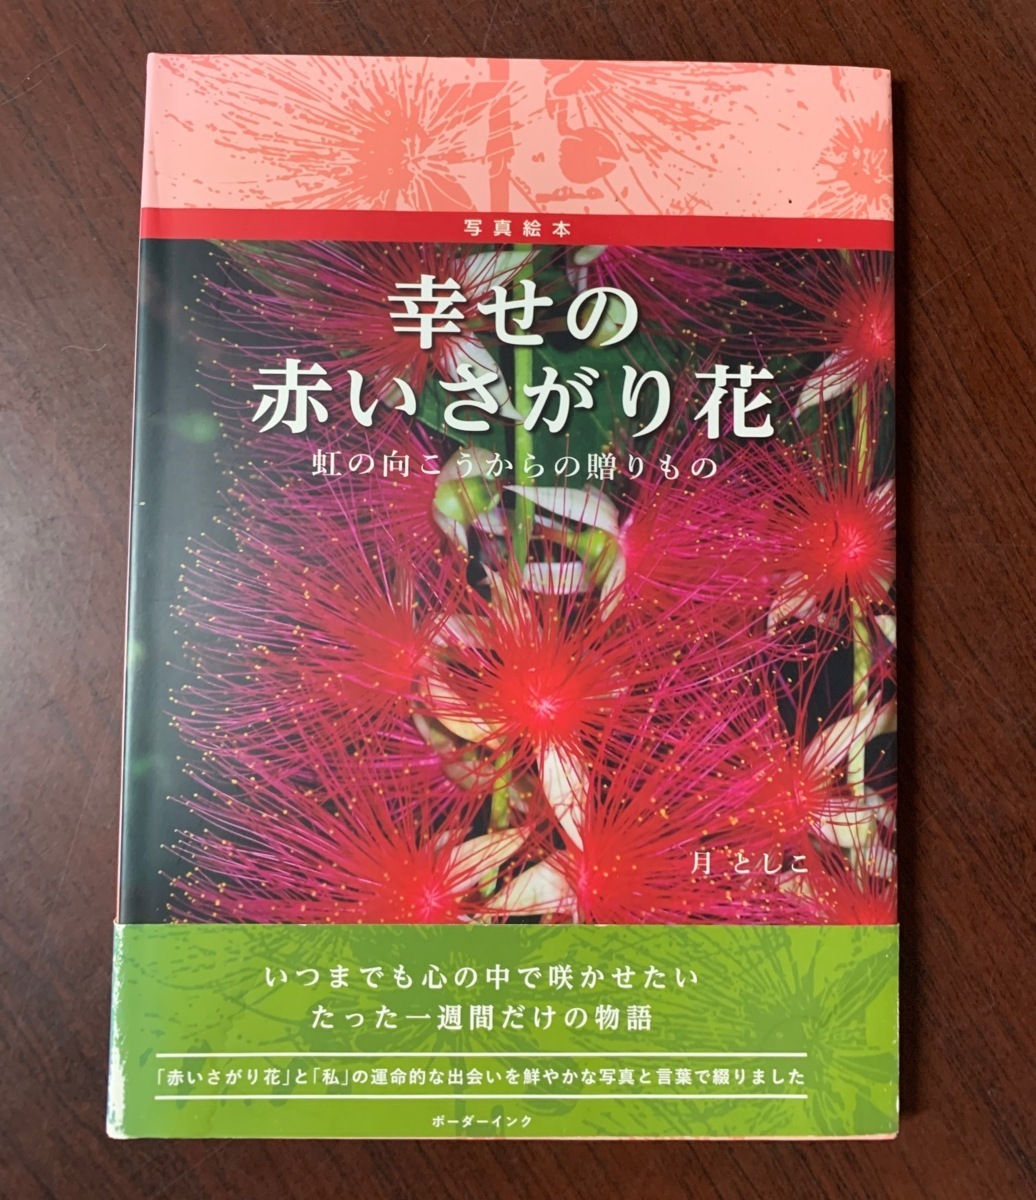  фотография книга с картинками ... красный ... цветок радуга. направление .. c .. было использовано 2018 год Okinawa ZS28-9